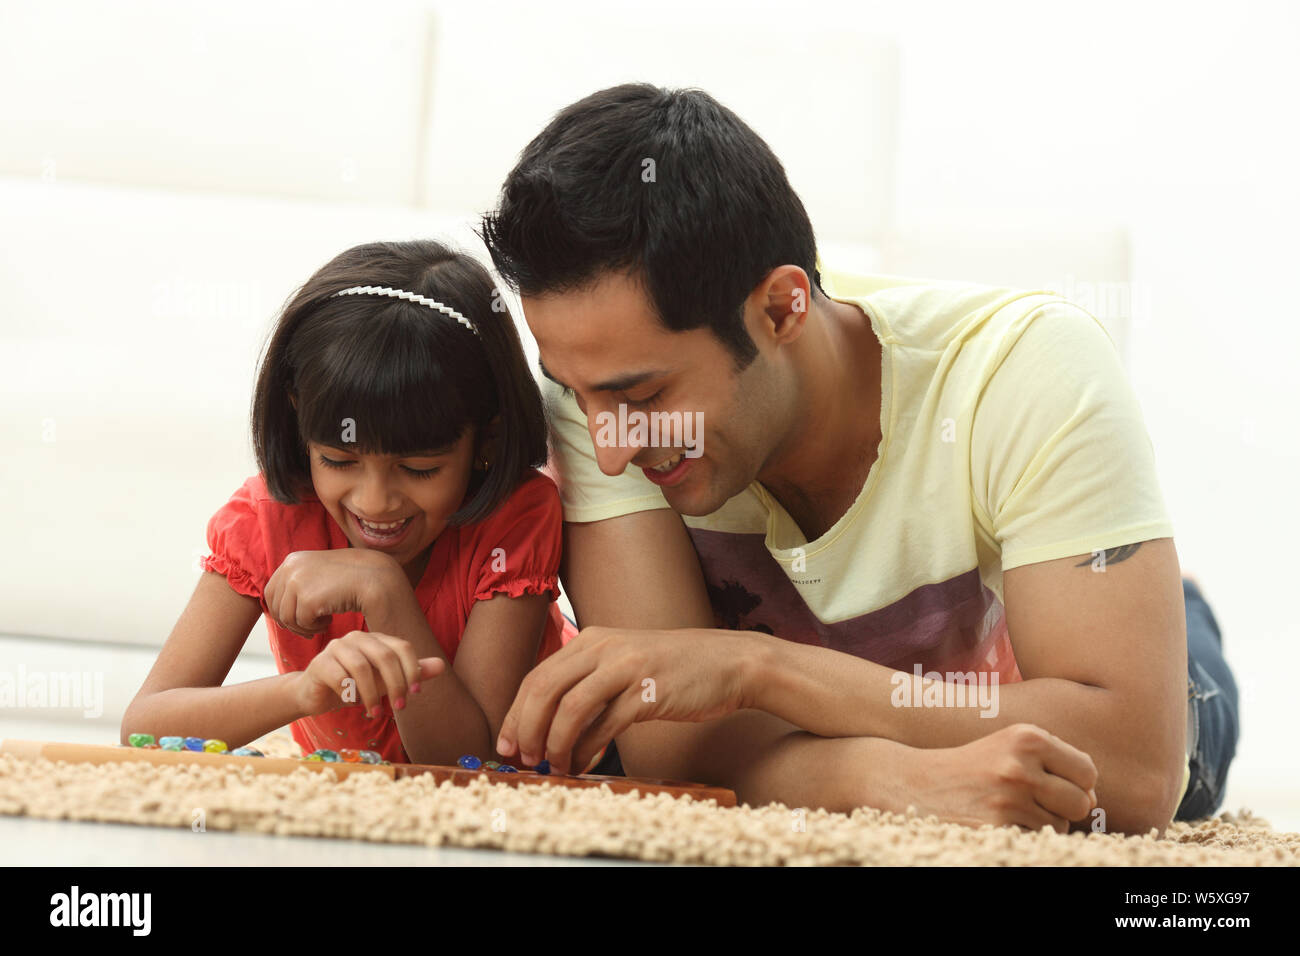 Mann mit seiner Tochter zu Hause Mancala-Spiel zu spielen Stockfoto